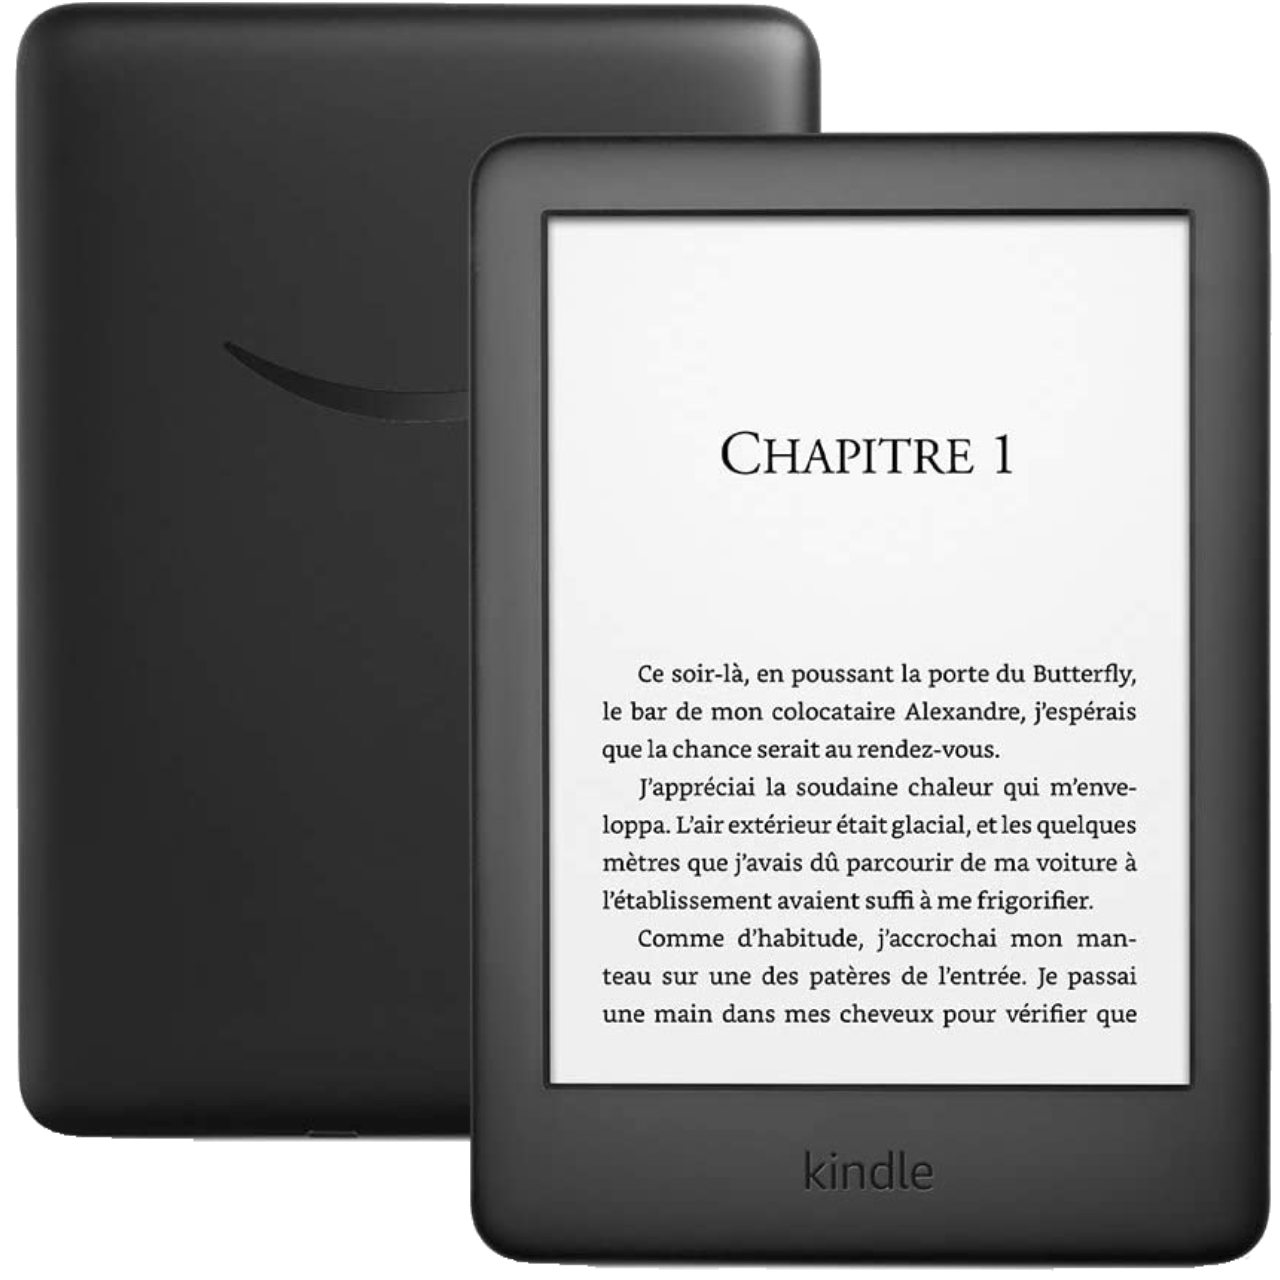 Comment prendre en main votre nouvelle liseuse Kindle ? - Numerama